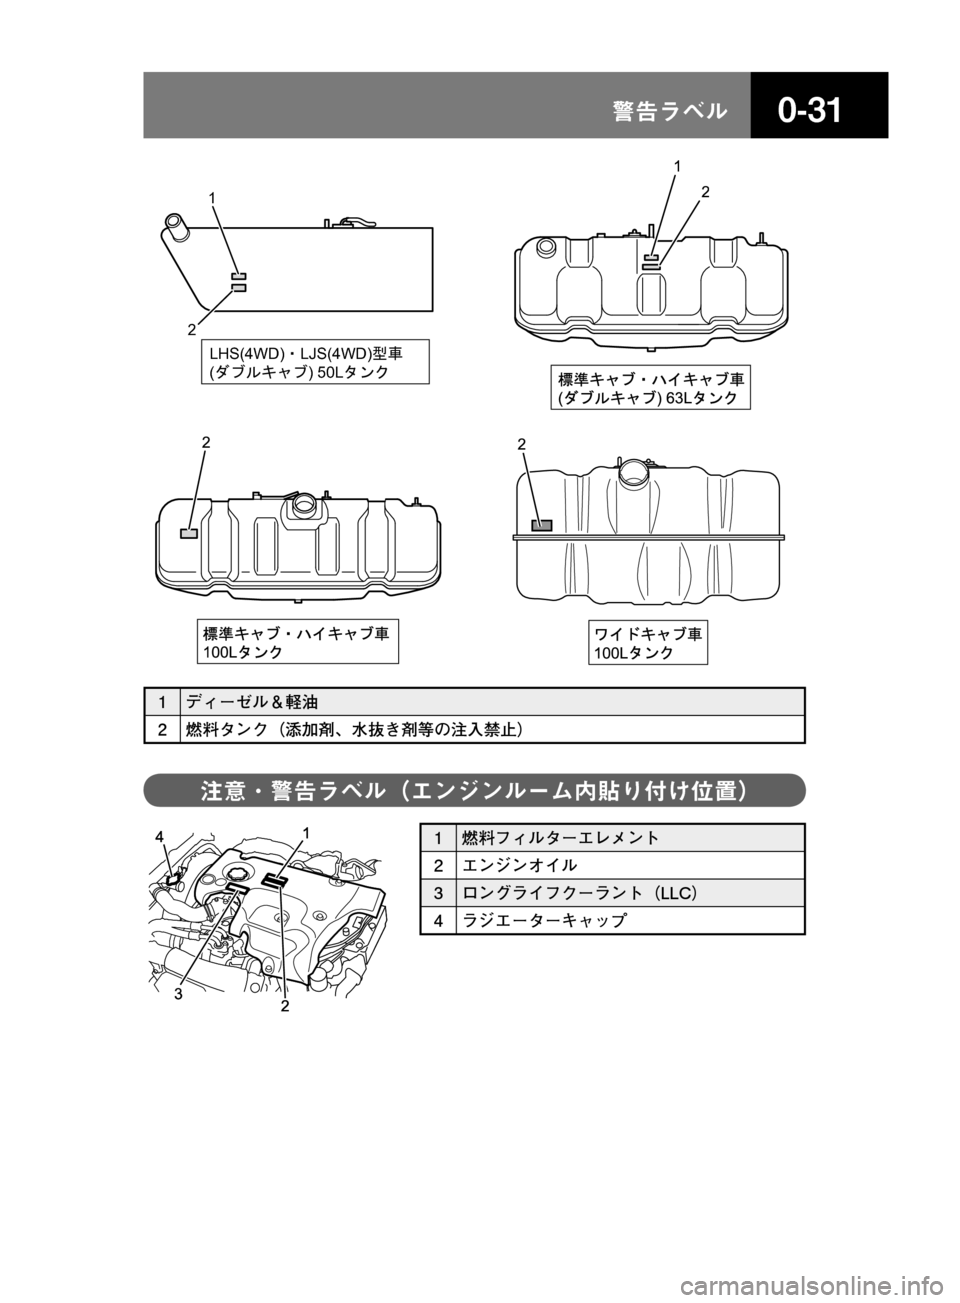 MAZDA MODEL TITAN 2013  タイタン｜取扱説明書 (in Japanese) ����/åÕç
1
LHS(4WD)íLJS(4WD)º34
(²ÈÝŸÕÈ) 50L±å¡
2
1
() 63L
2
2
100L
2
100L
� 